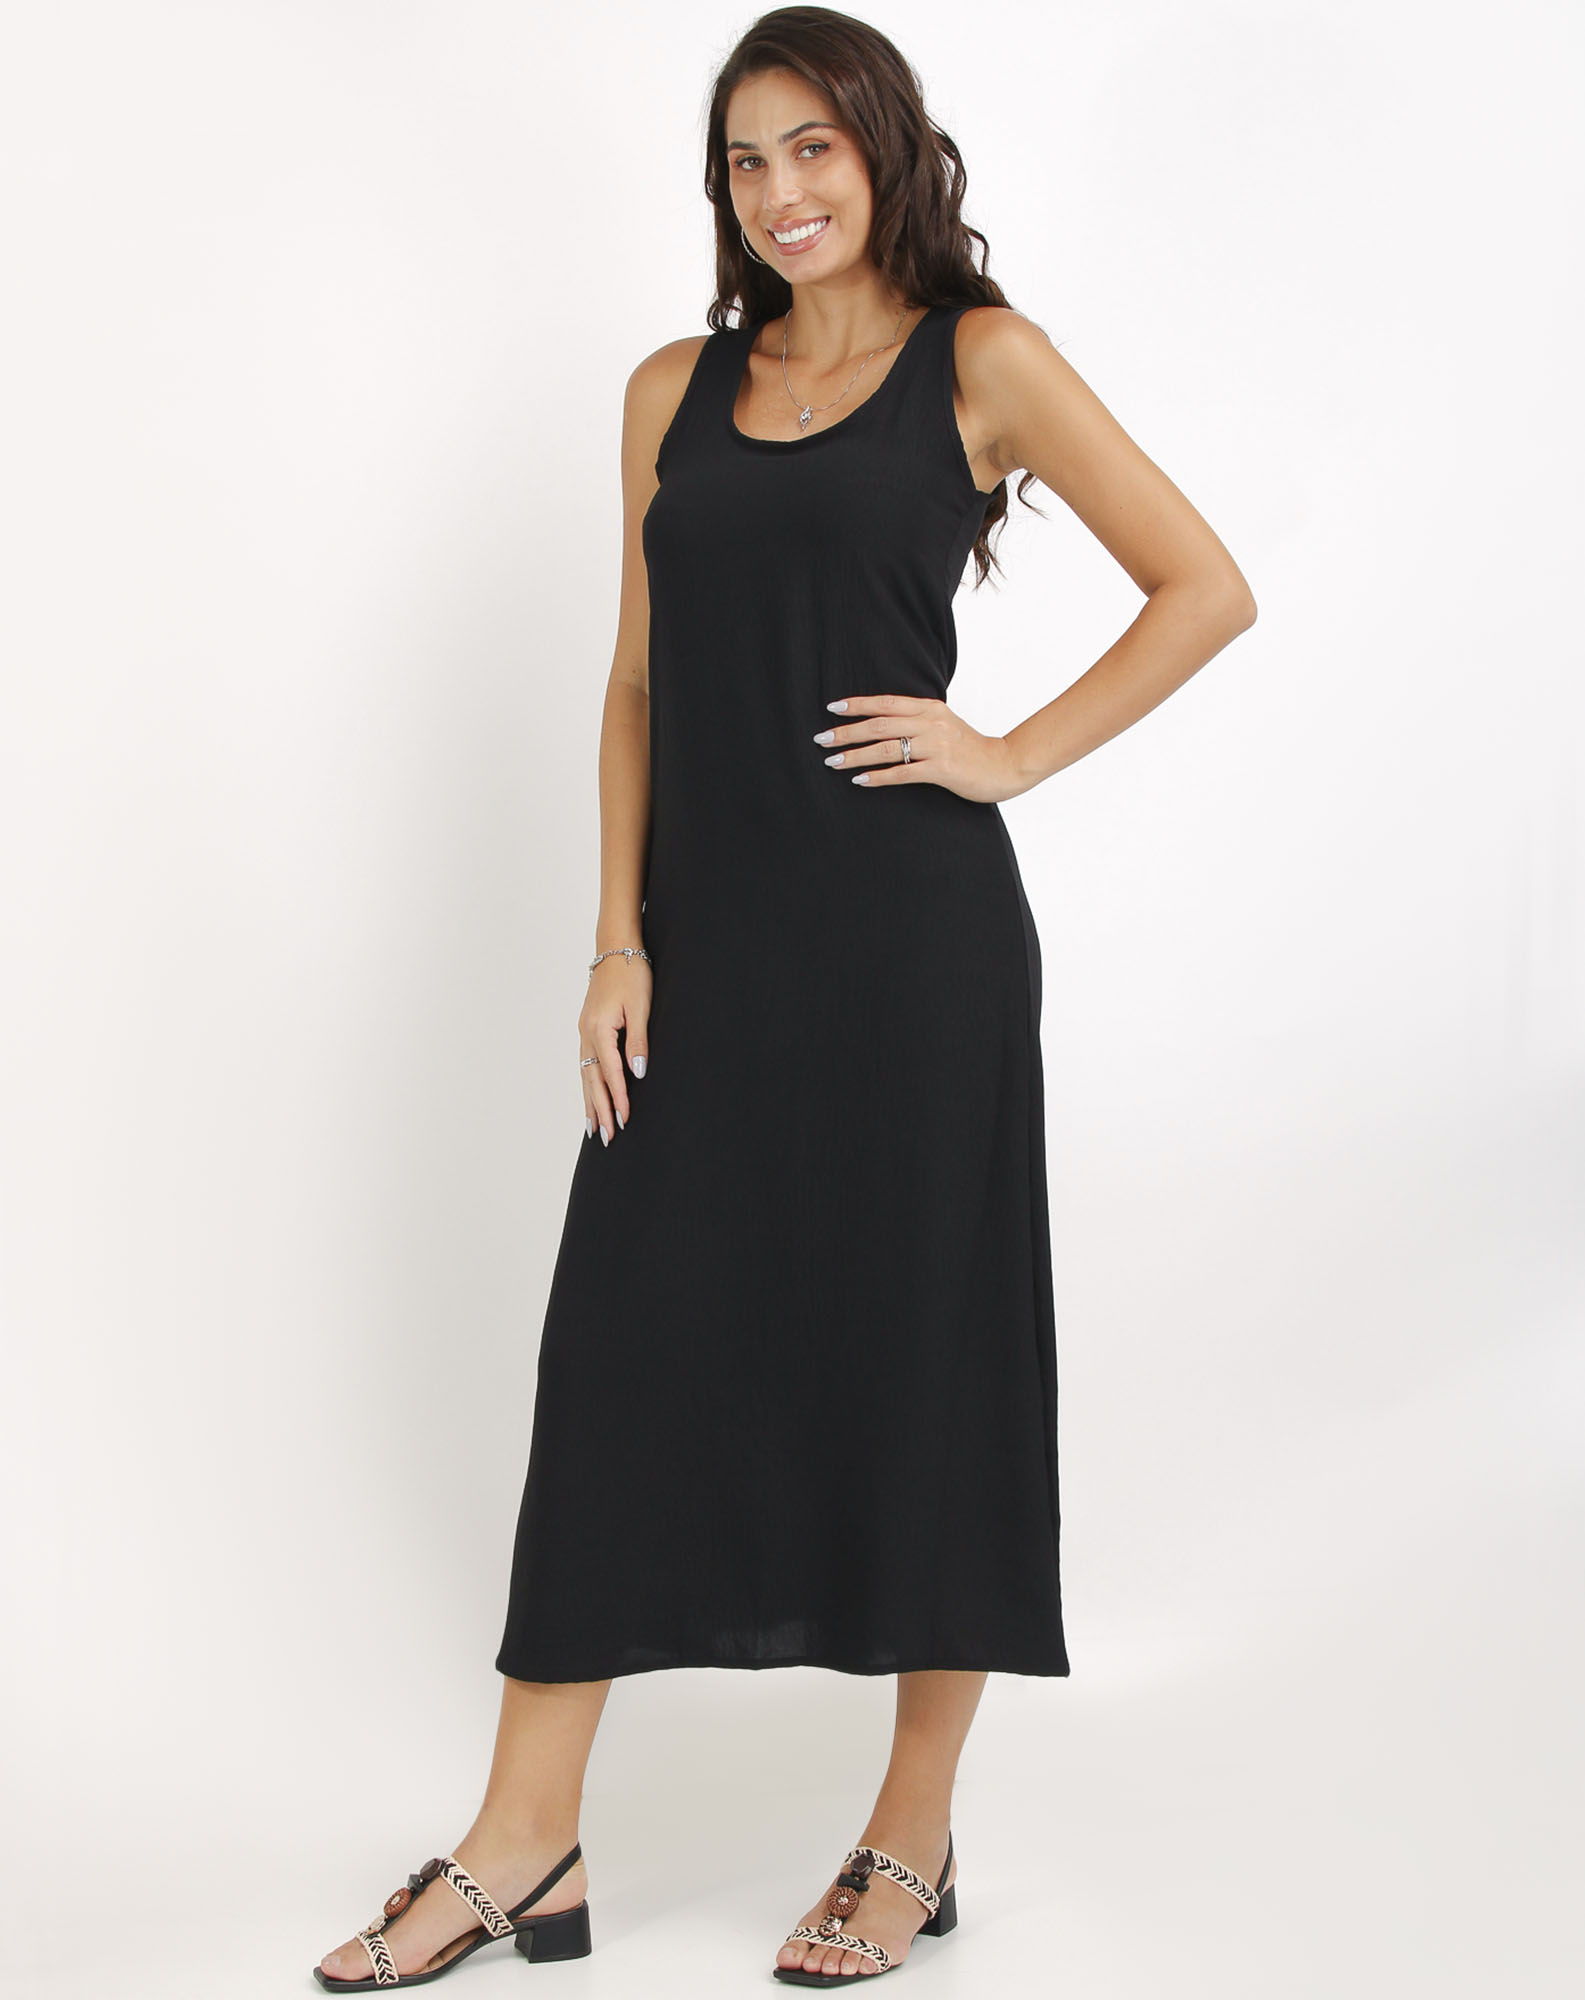 668046001 vestido longo feminino básico preto p 139